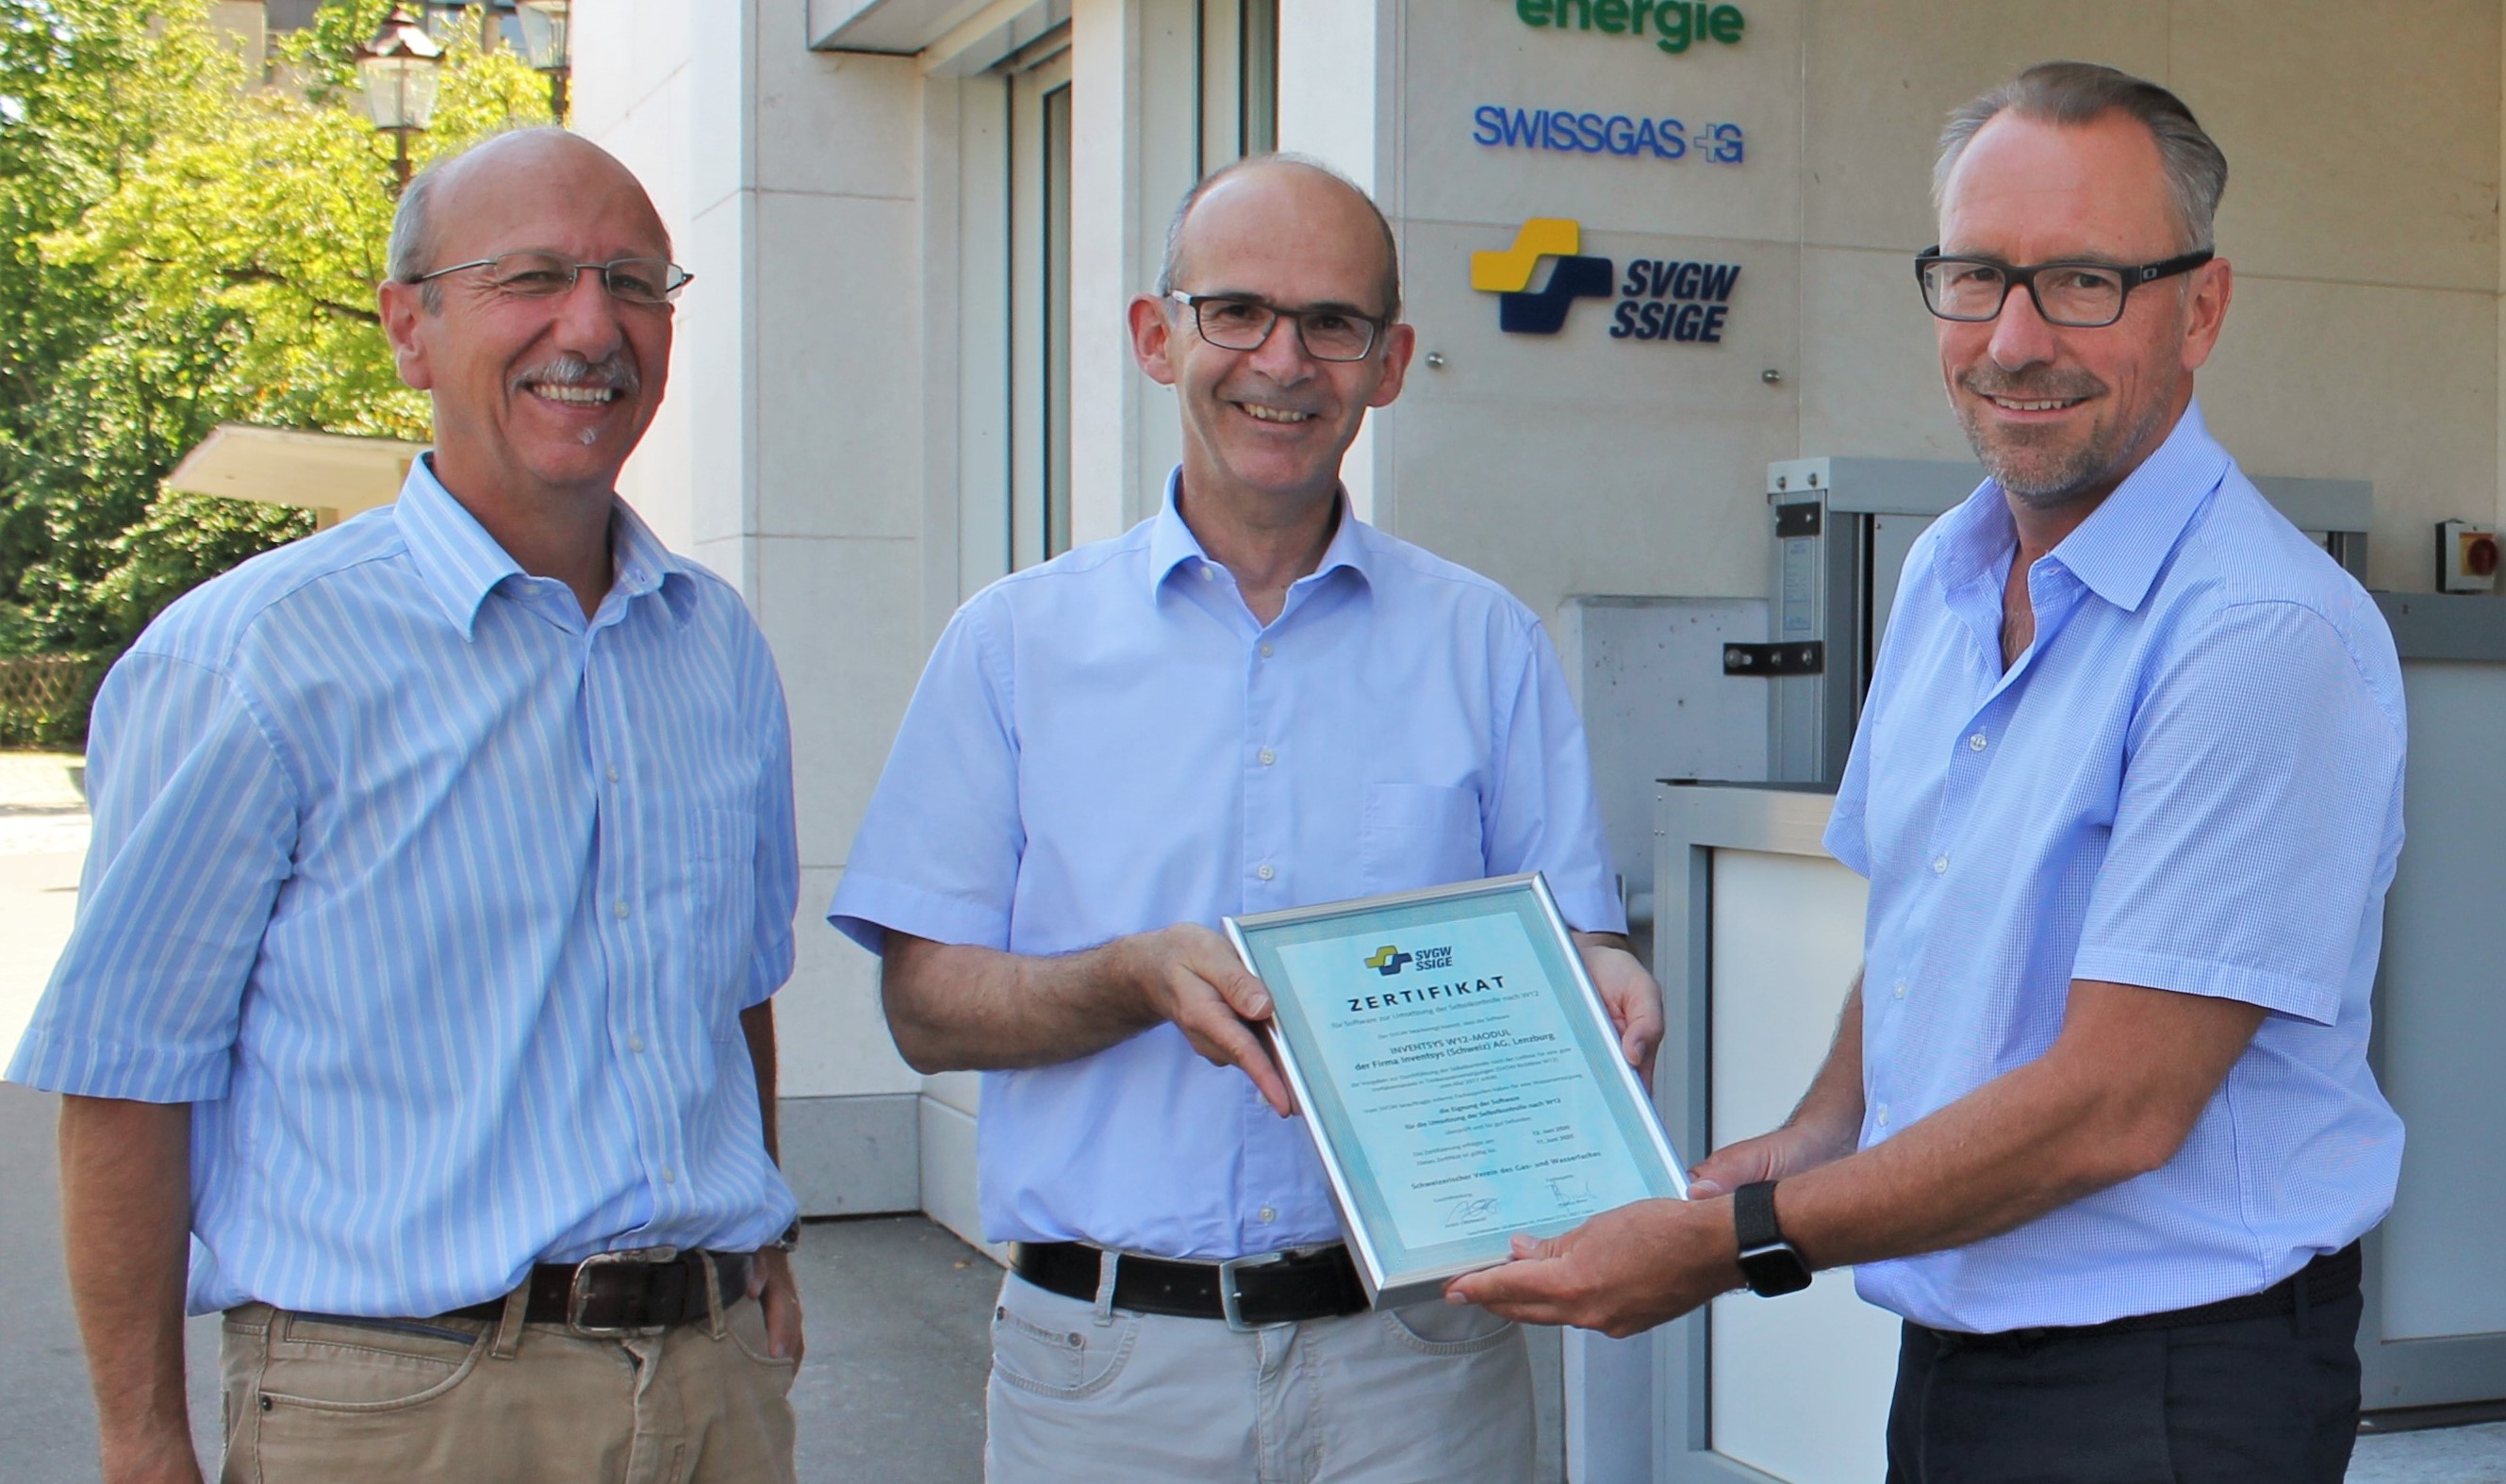 Bild der Zertifikatsübergabe mit Markus Biner (SVGW), Martin Sager (Direktor SVGW) und Martin Morawetz (Geschäftsführer Inventsys)